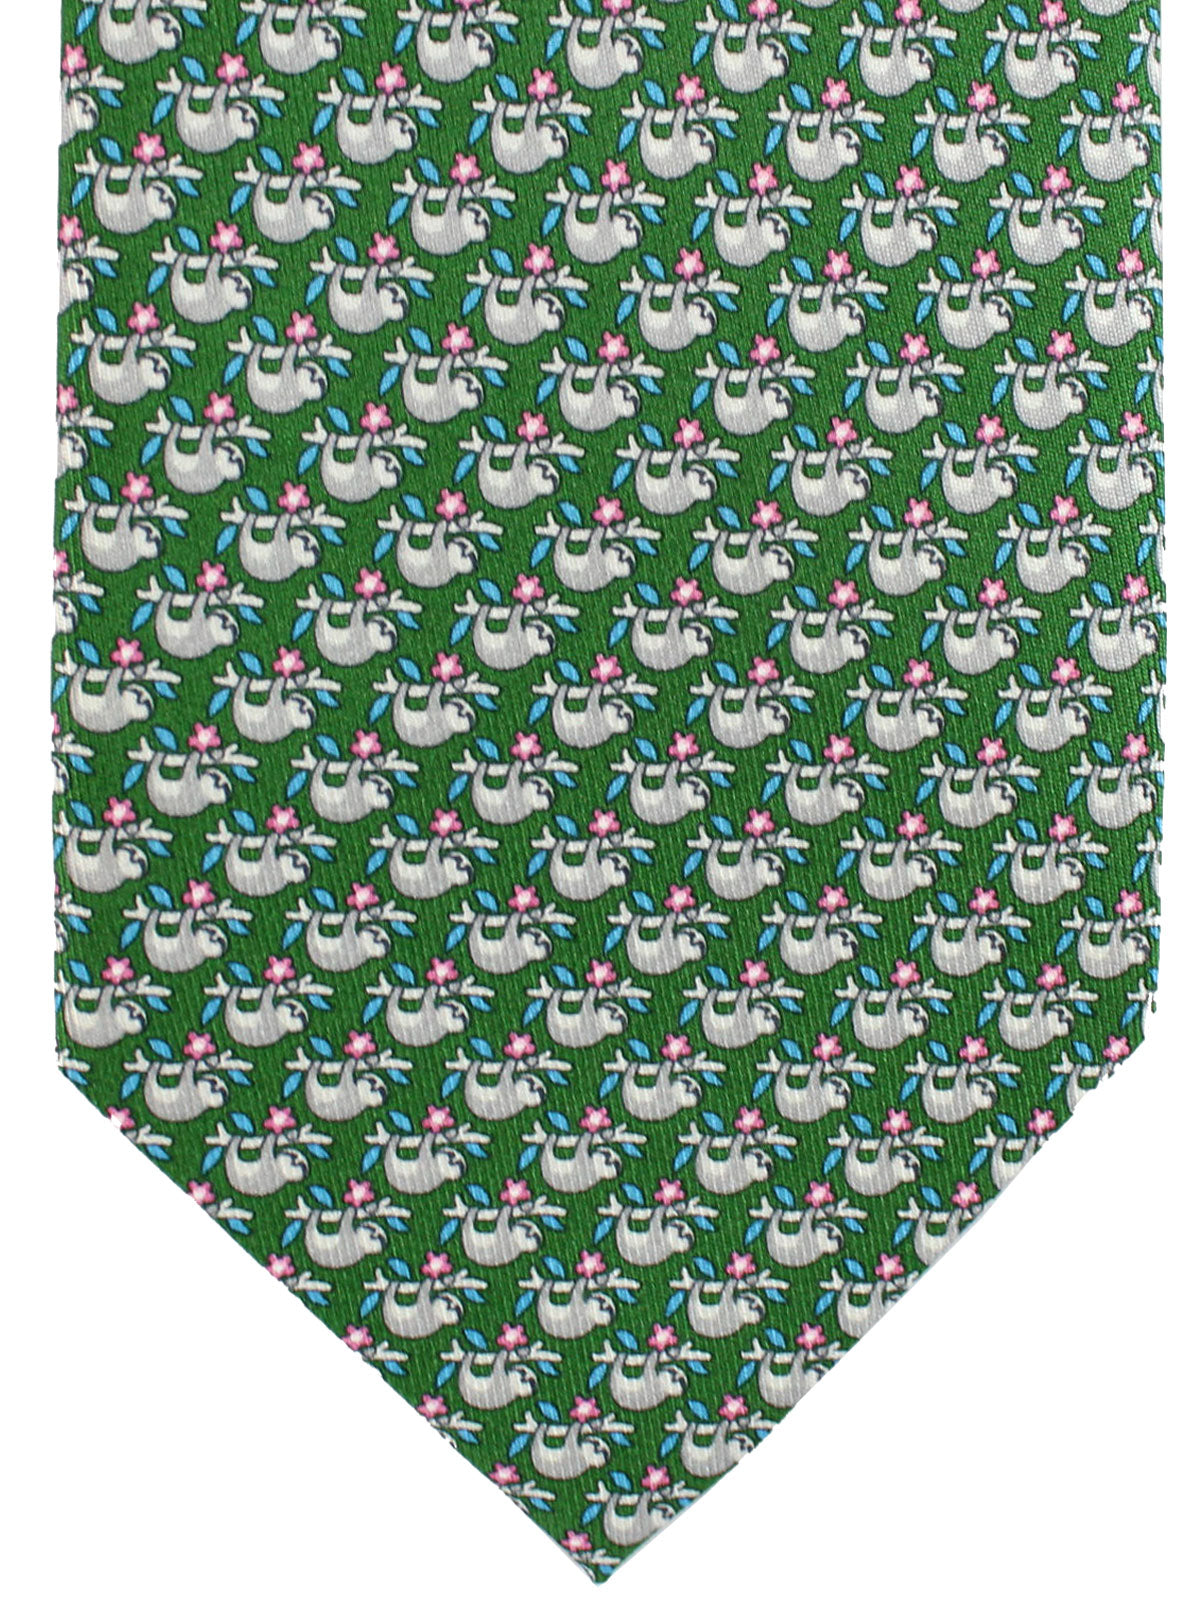 Salvatore Ferragamo Tie Green Koala Design Novelty